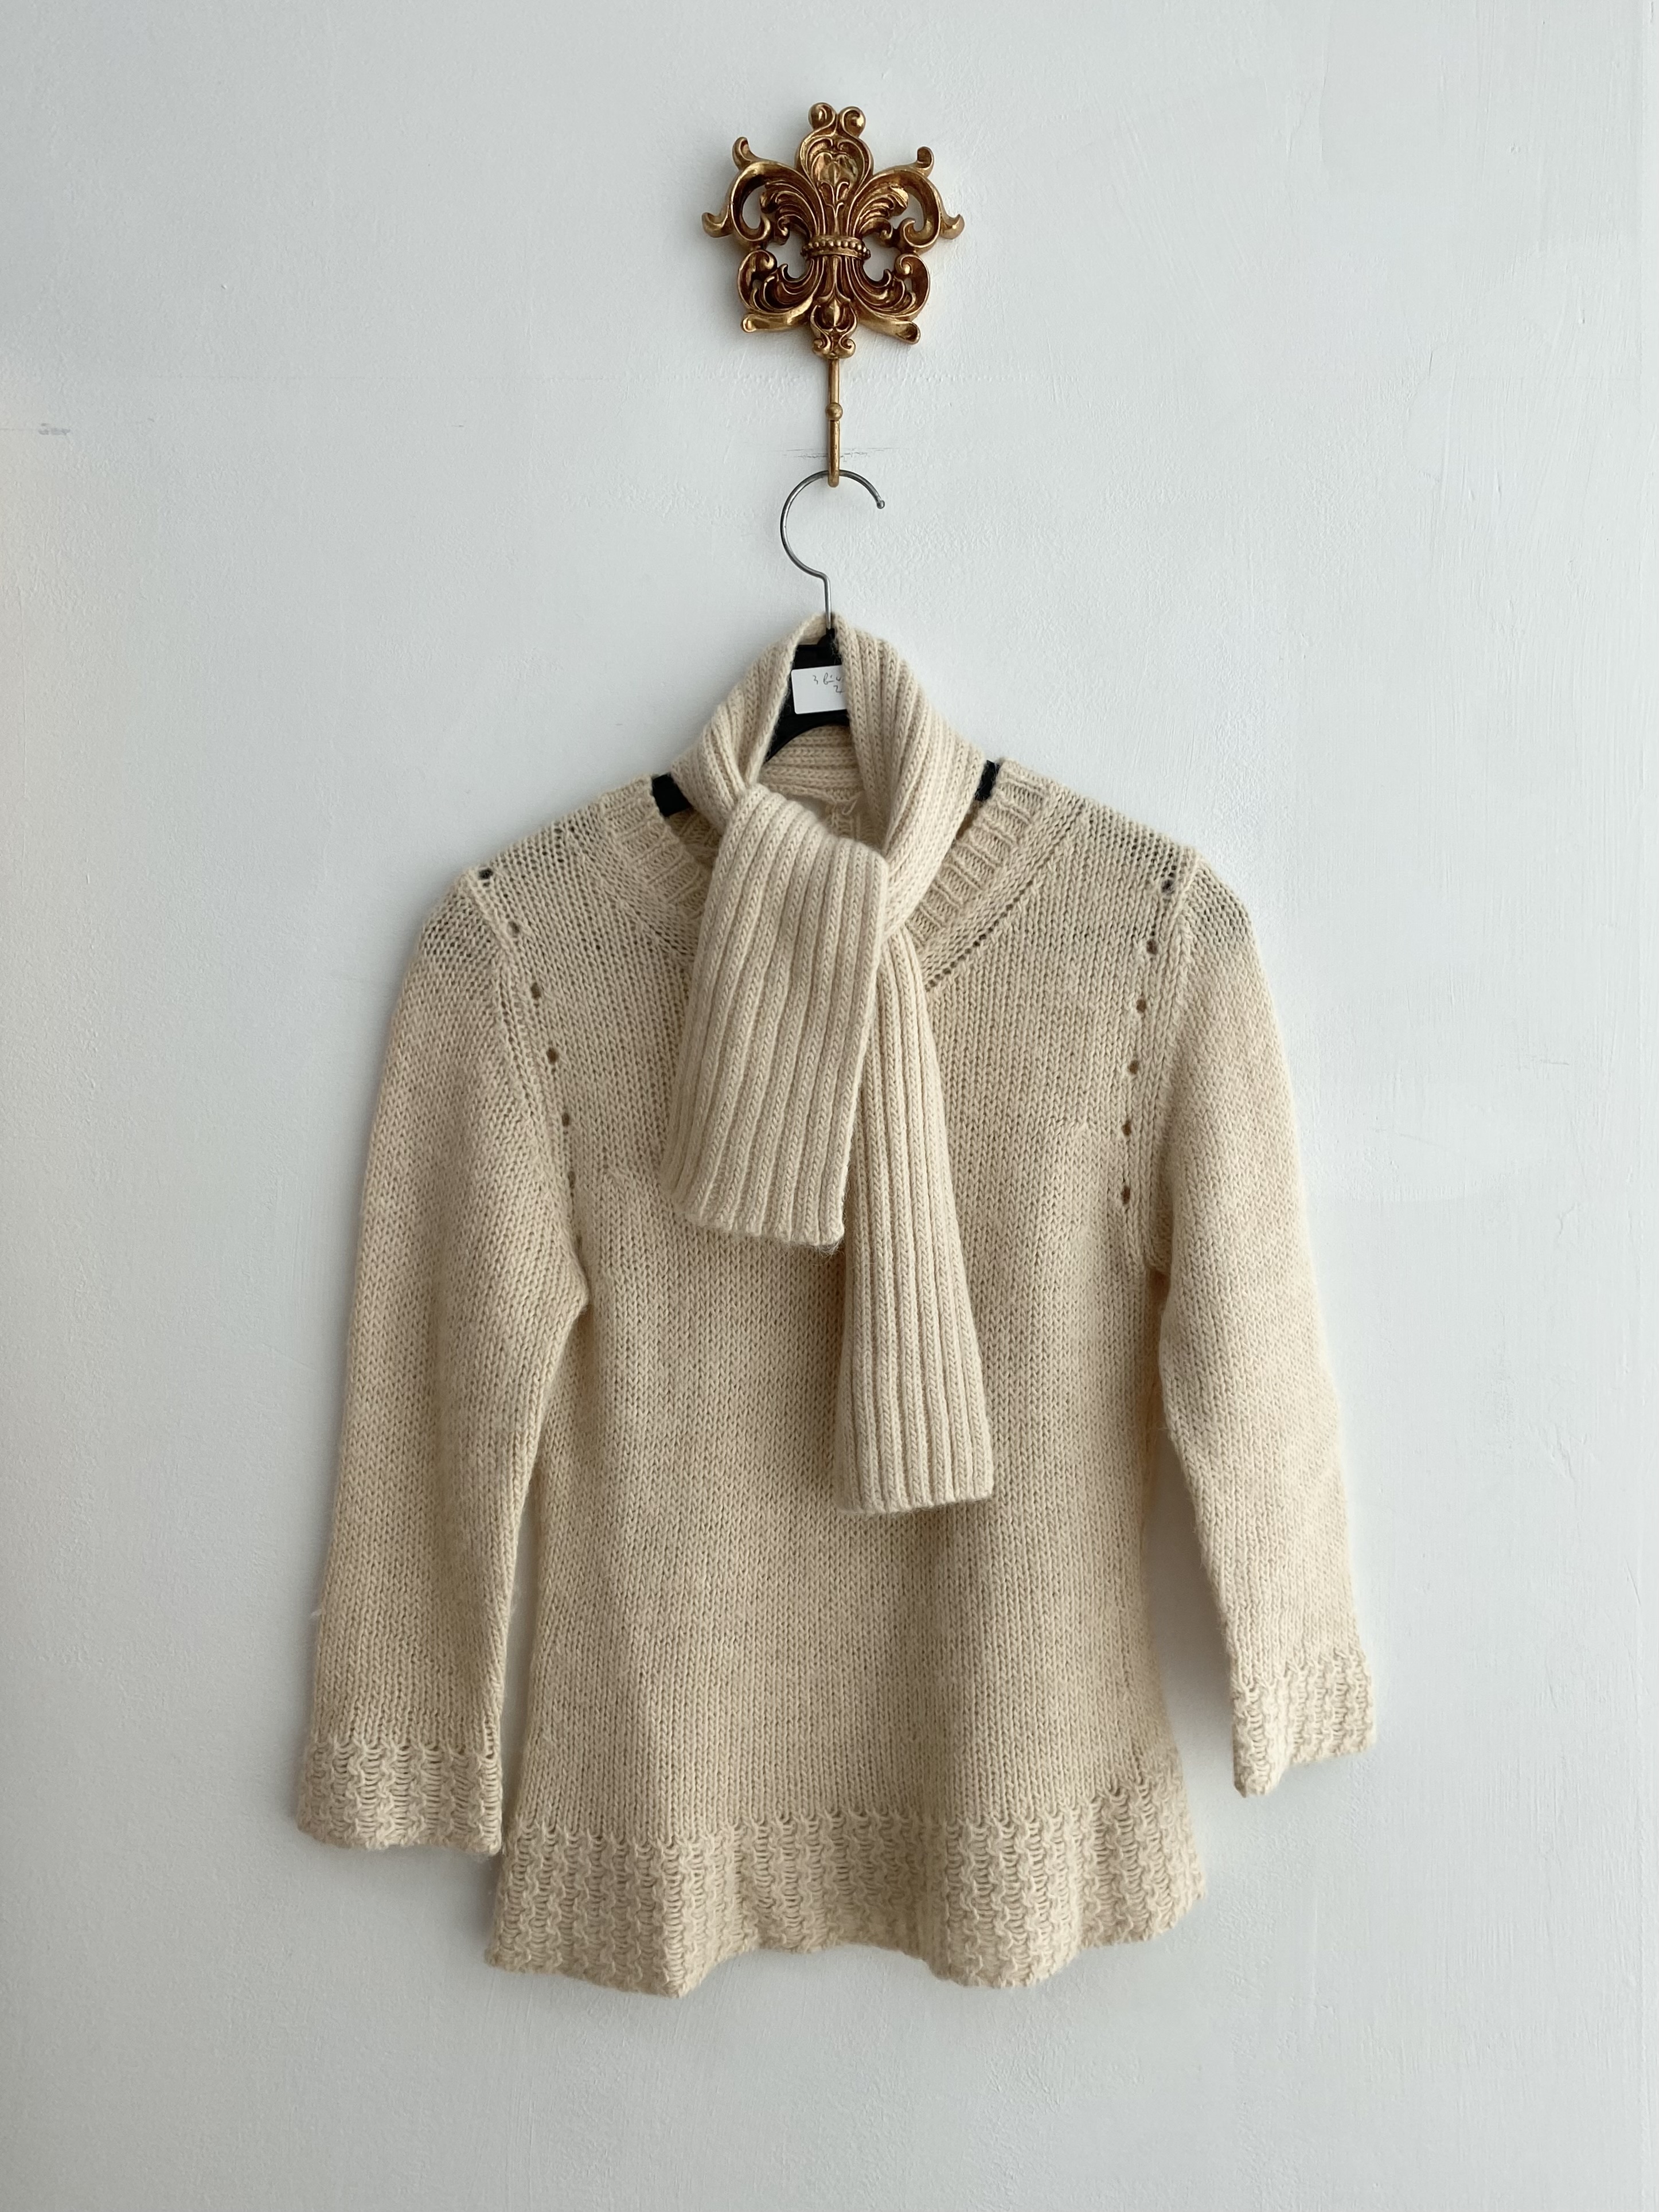 Light beige alpaca muffler knit